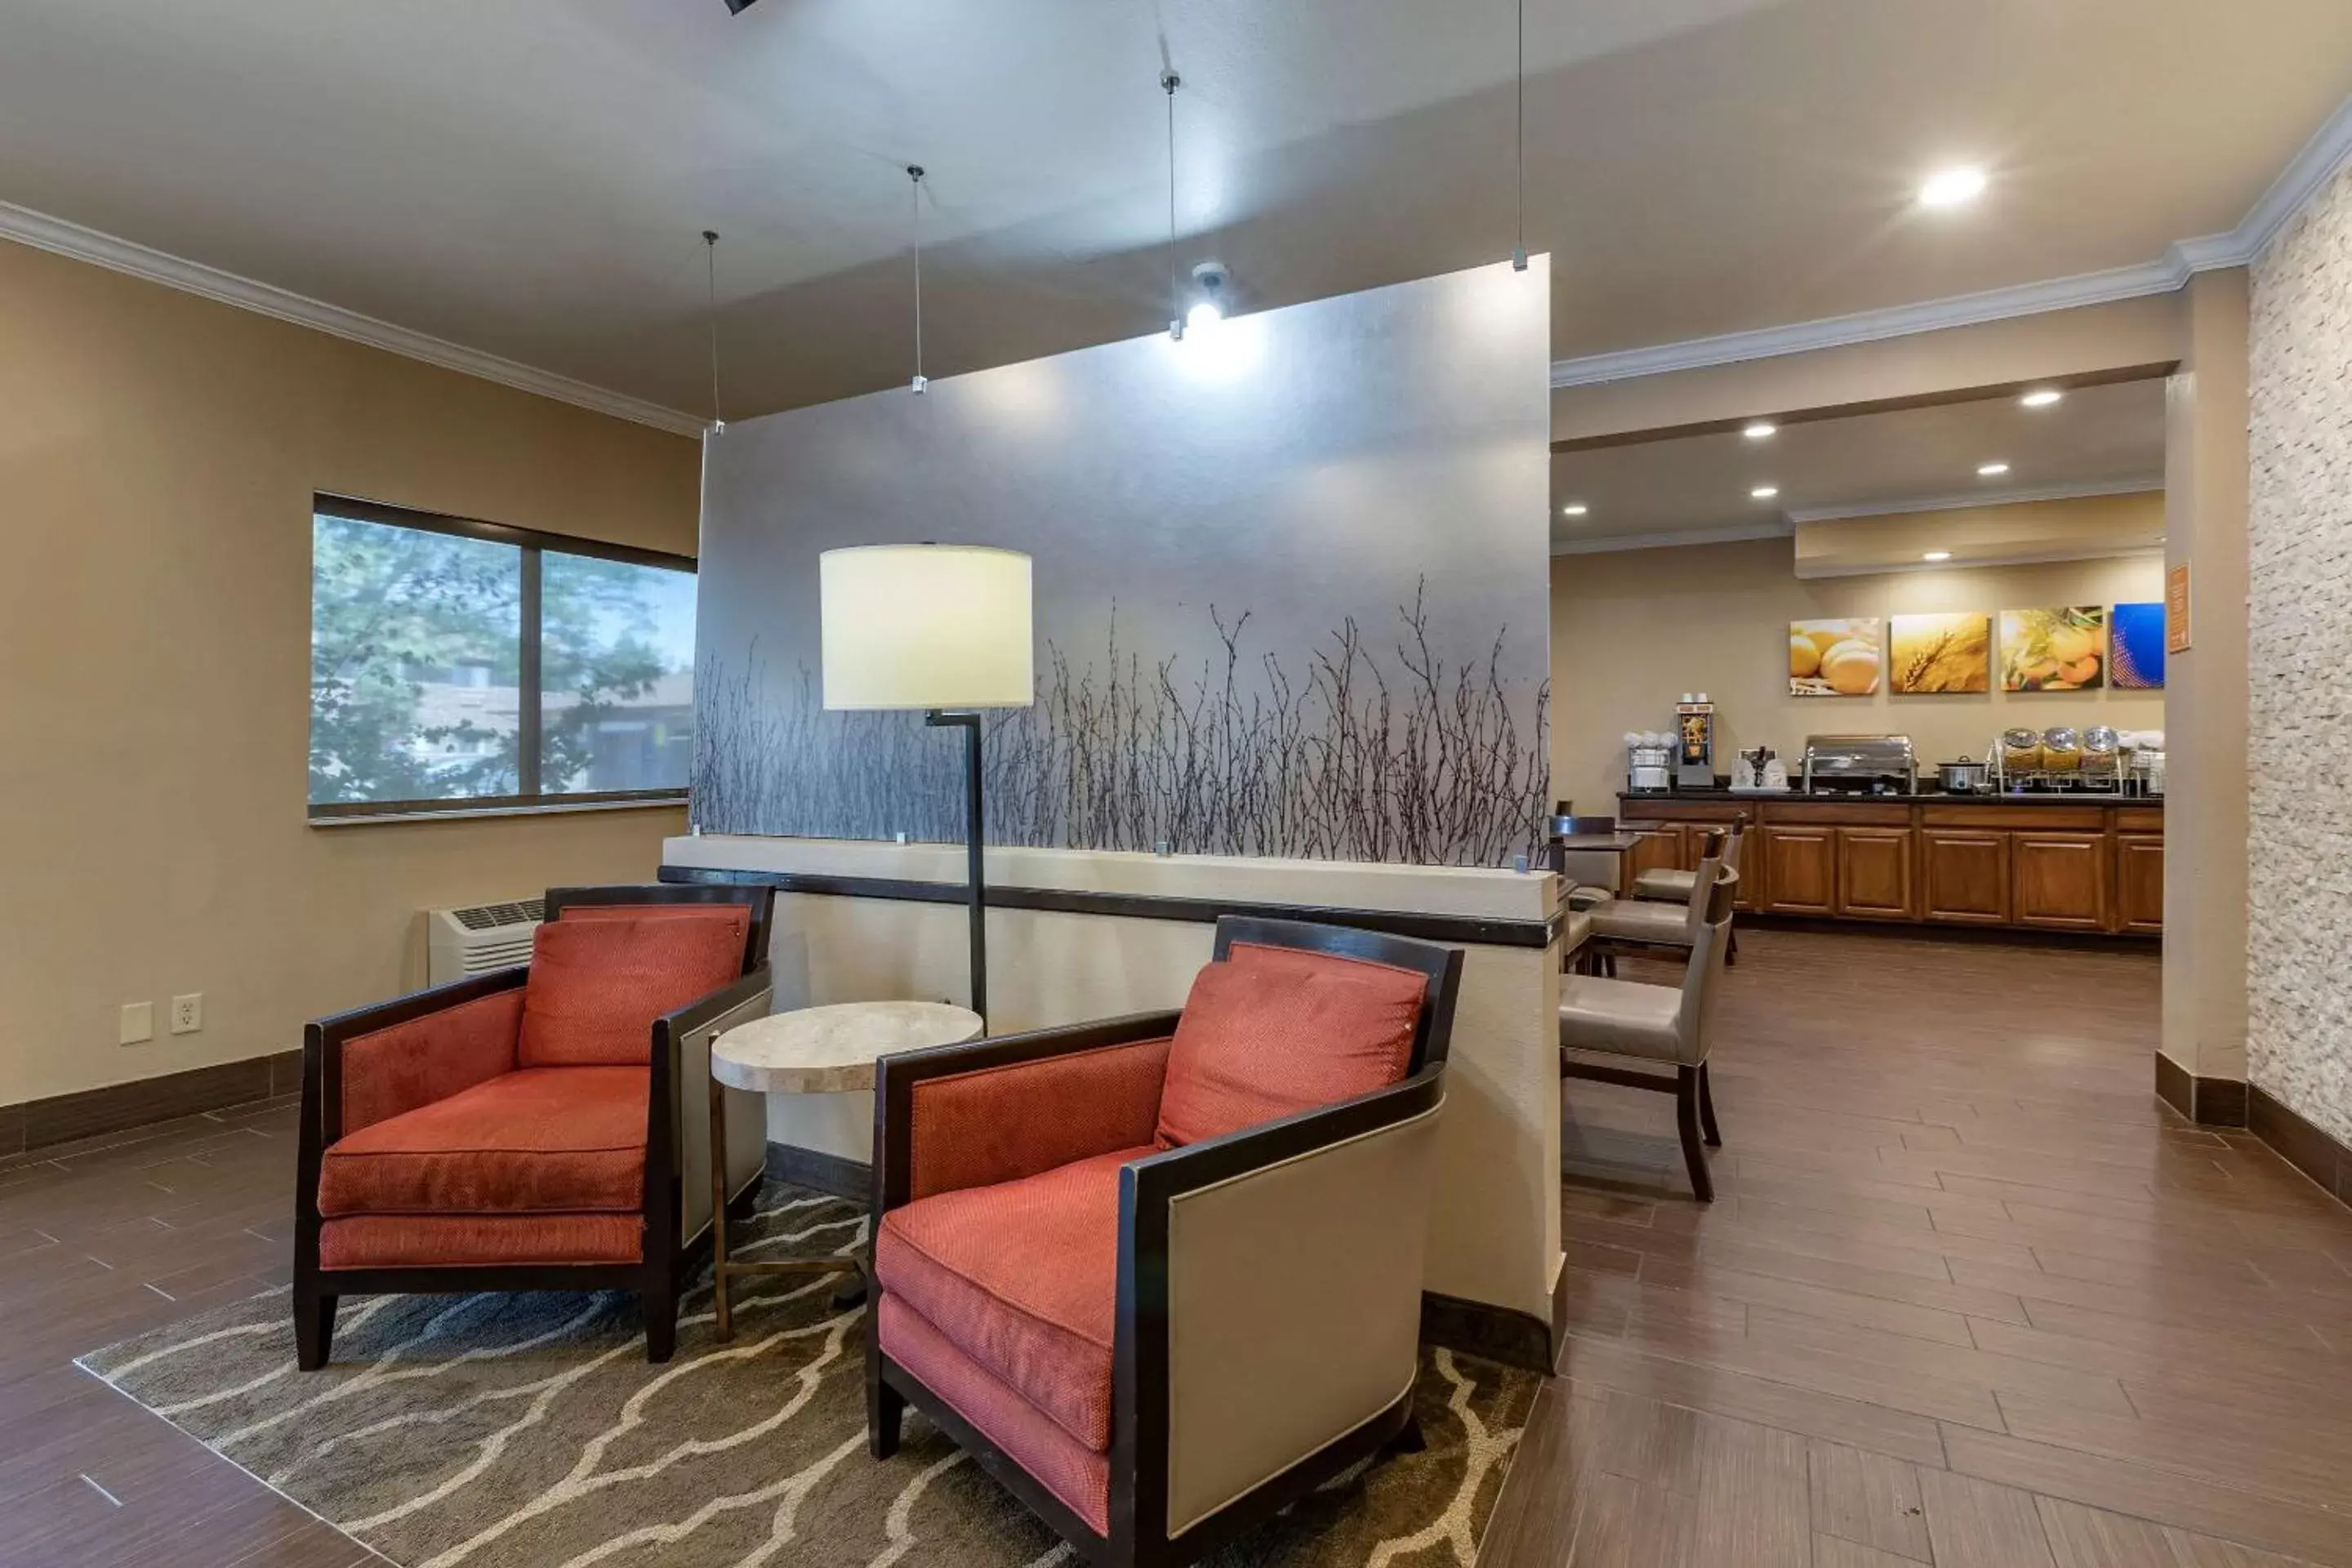 Lobby or reception in Comfort Inn & Suites Waterloo – Cedar Falls